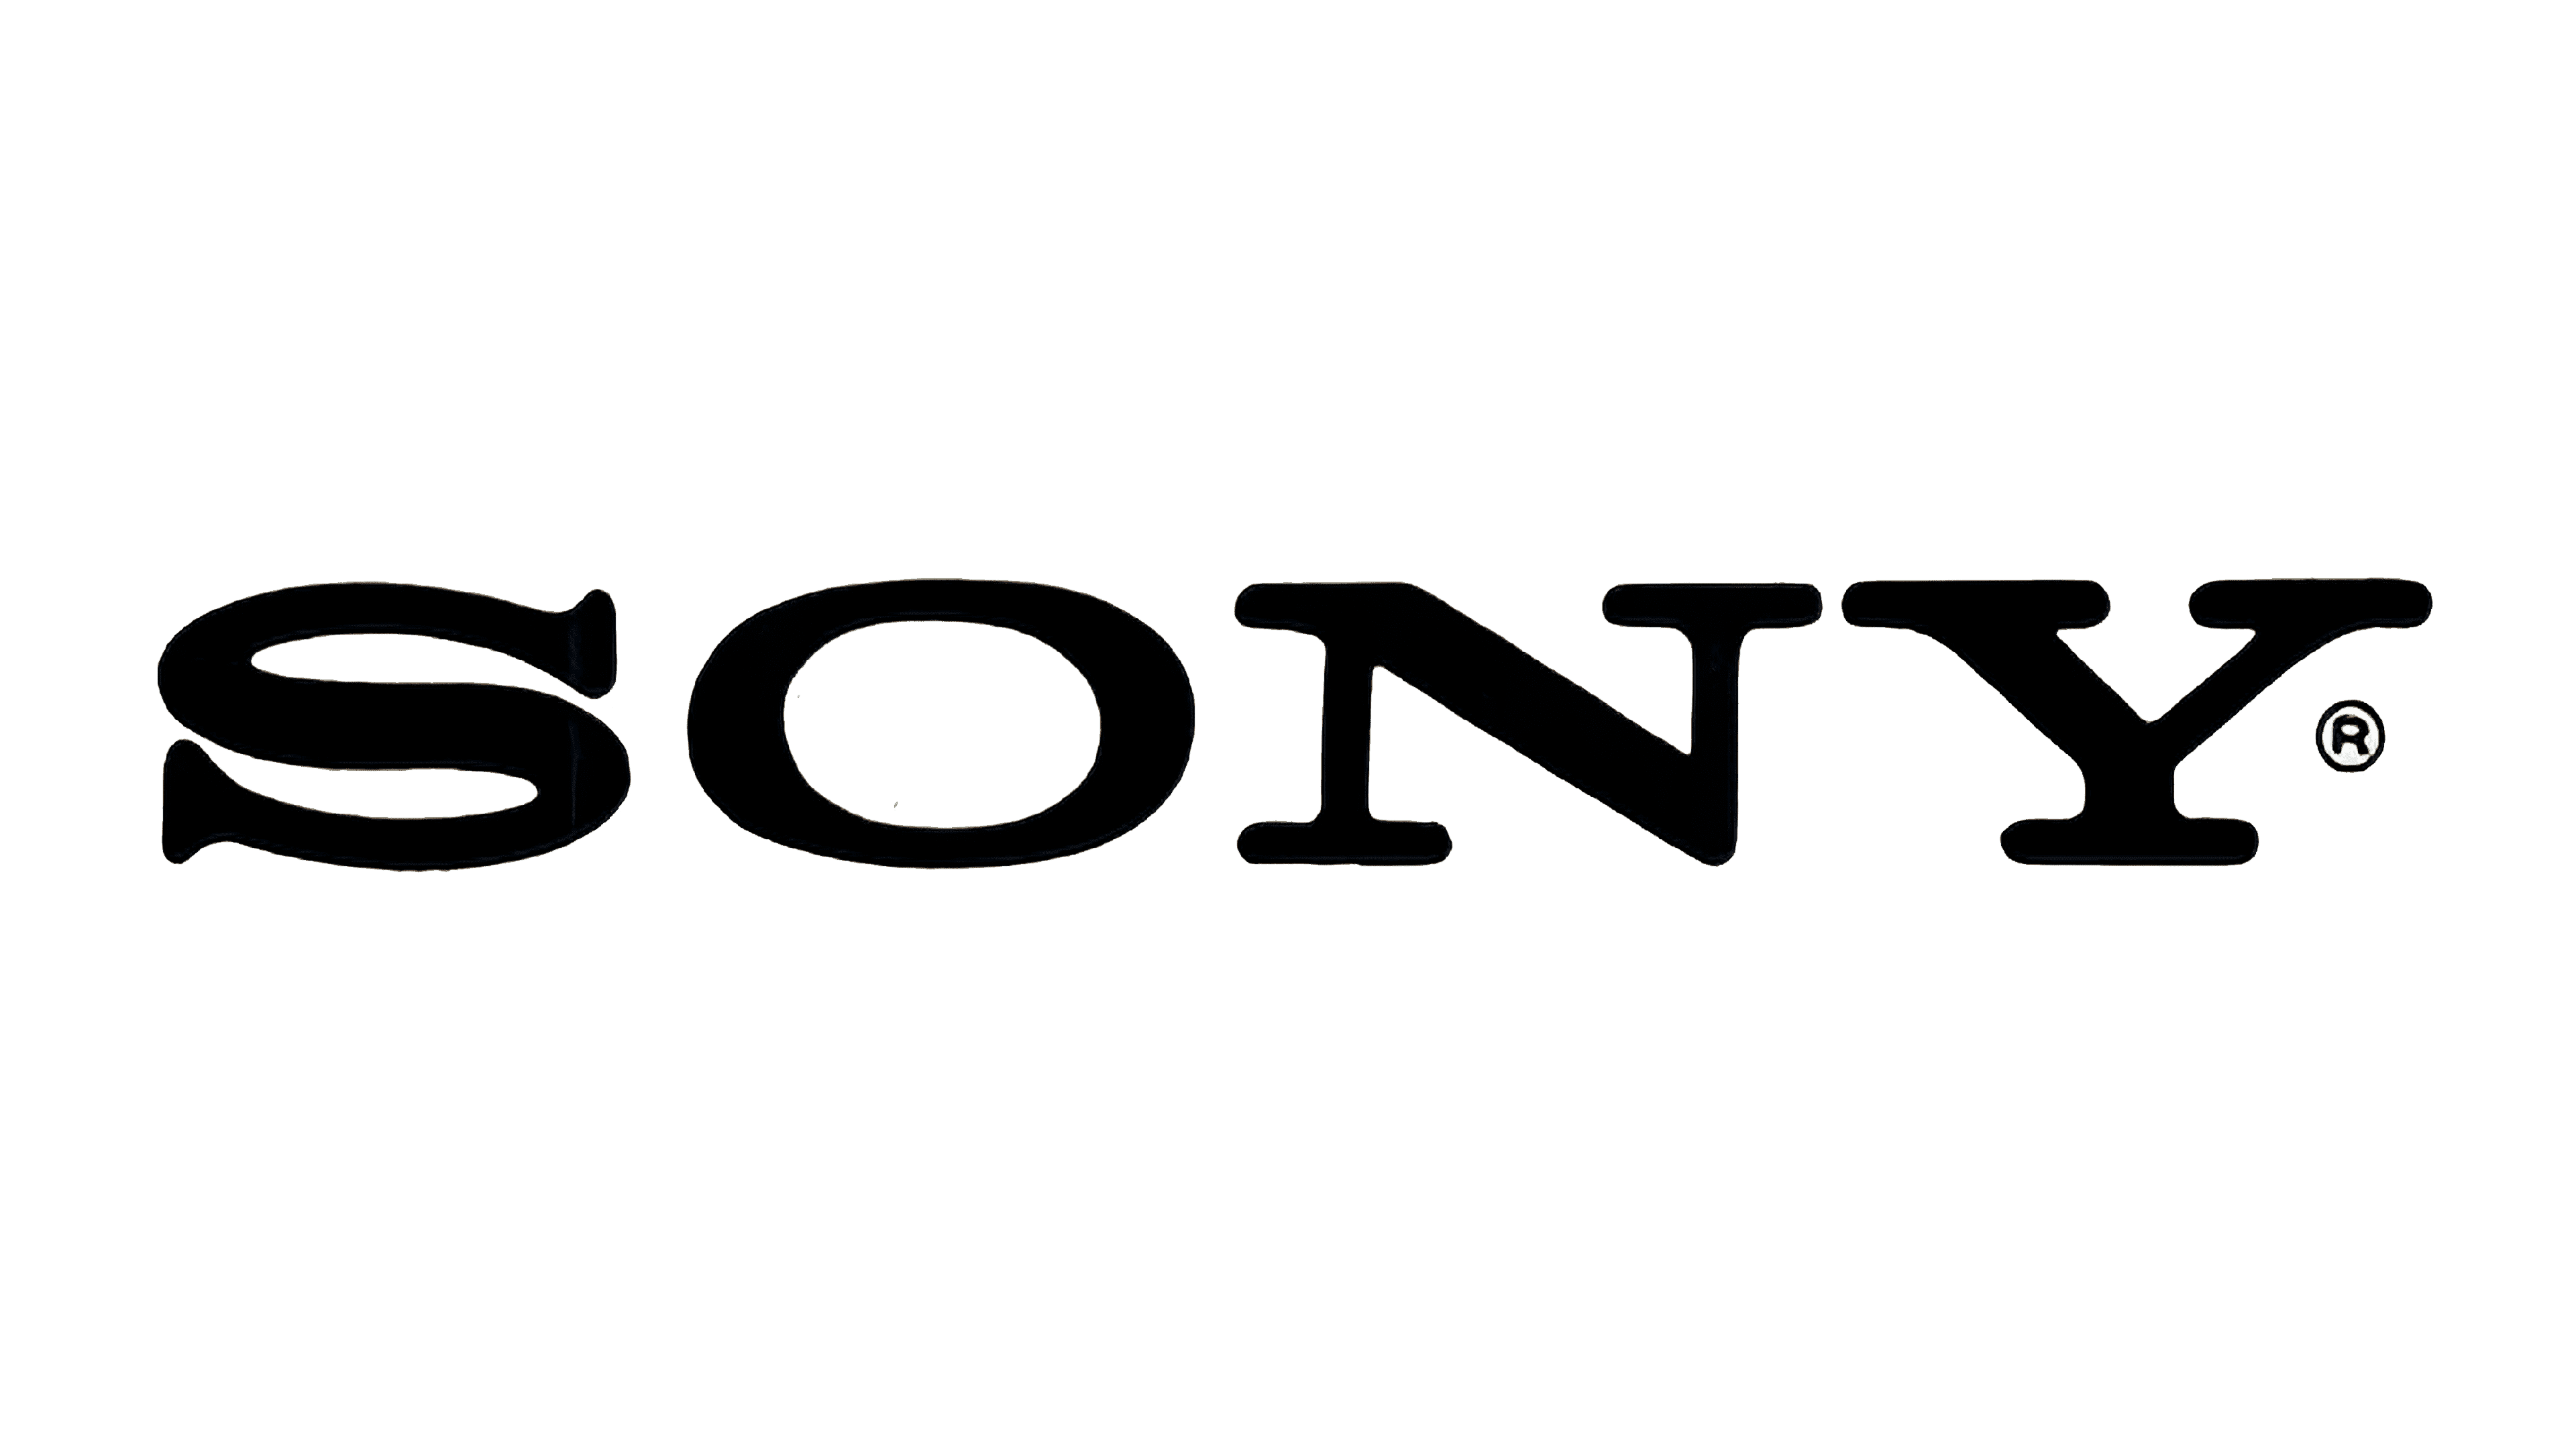 sony computer company logo